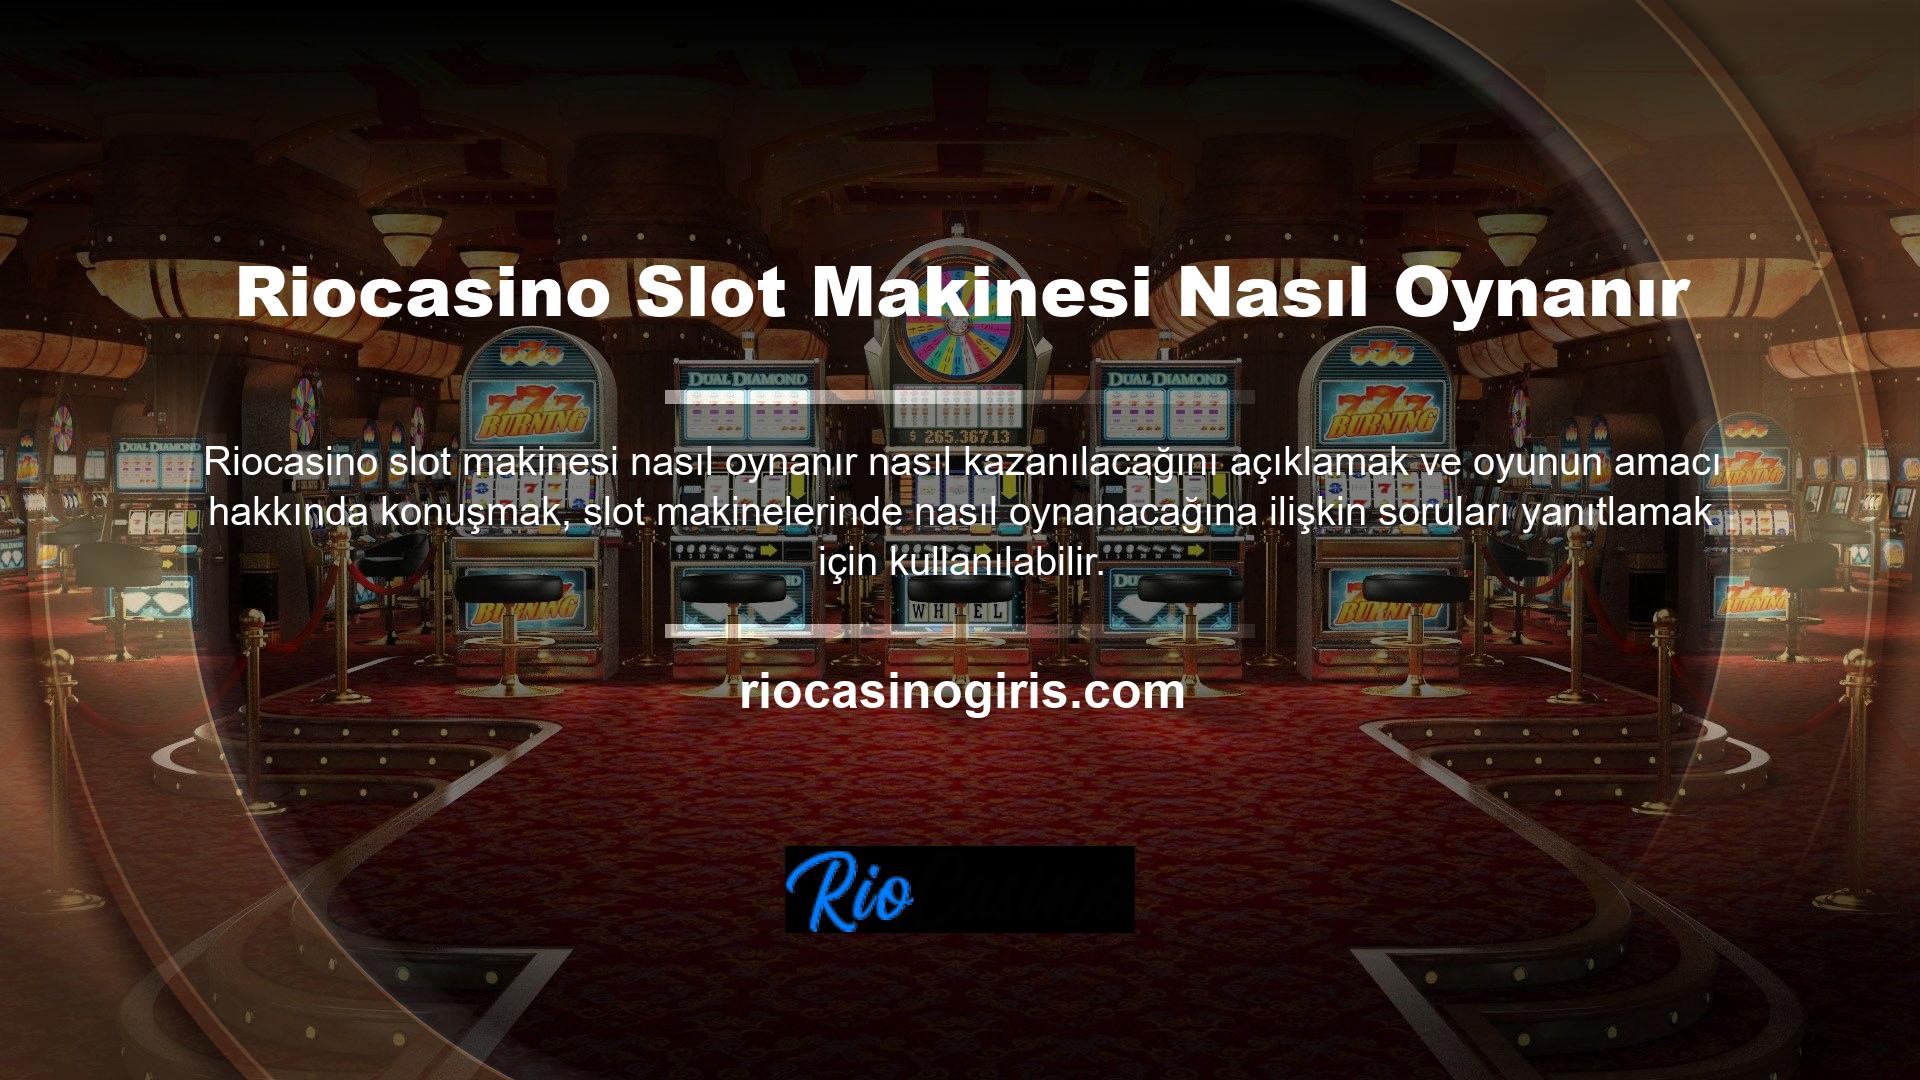 Kaldıraç veya düğme tarzı slot makineleri Riocasino çok popülerdir ve 3 veya daha fazla makaraya sahiptir